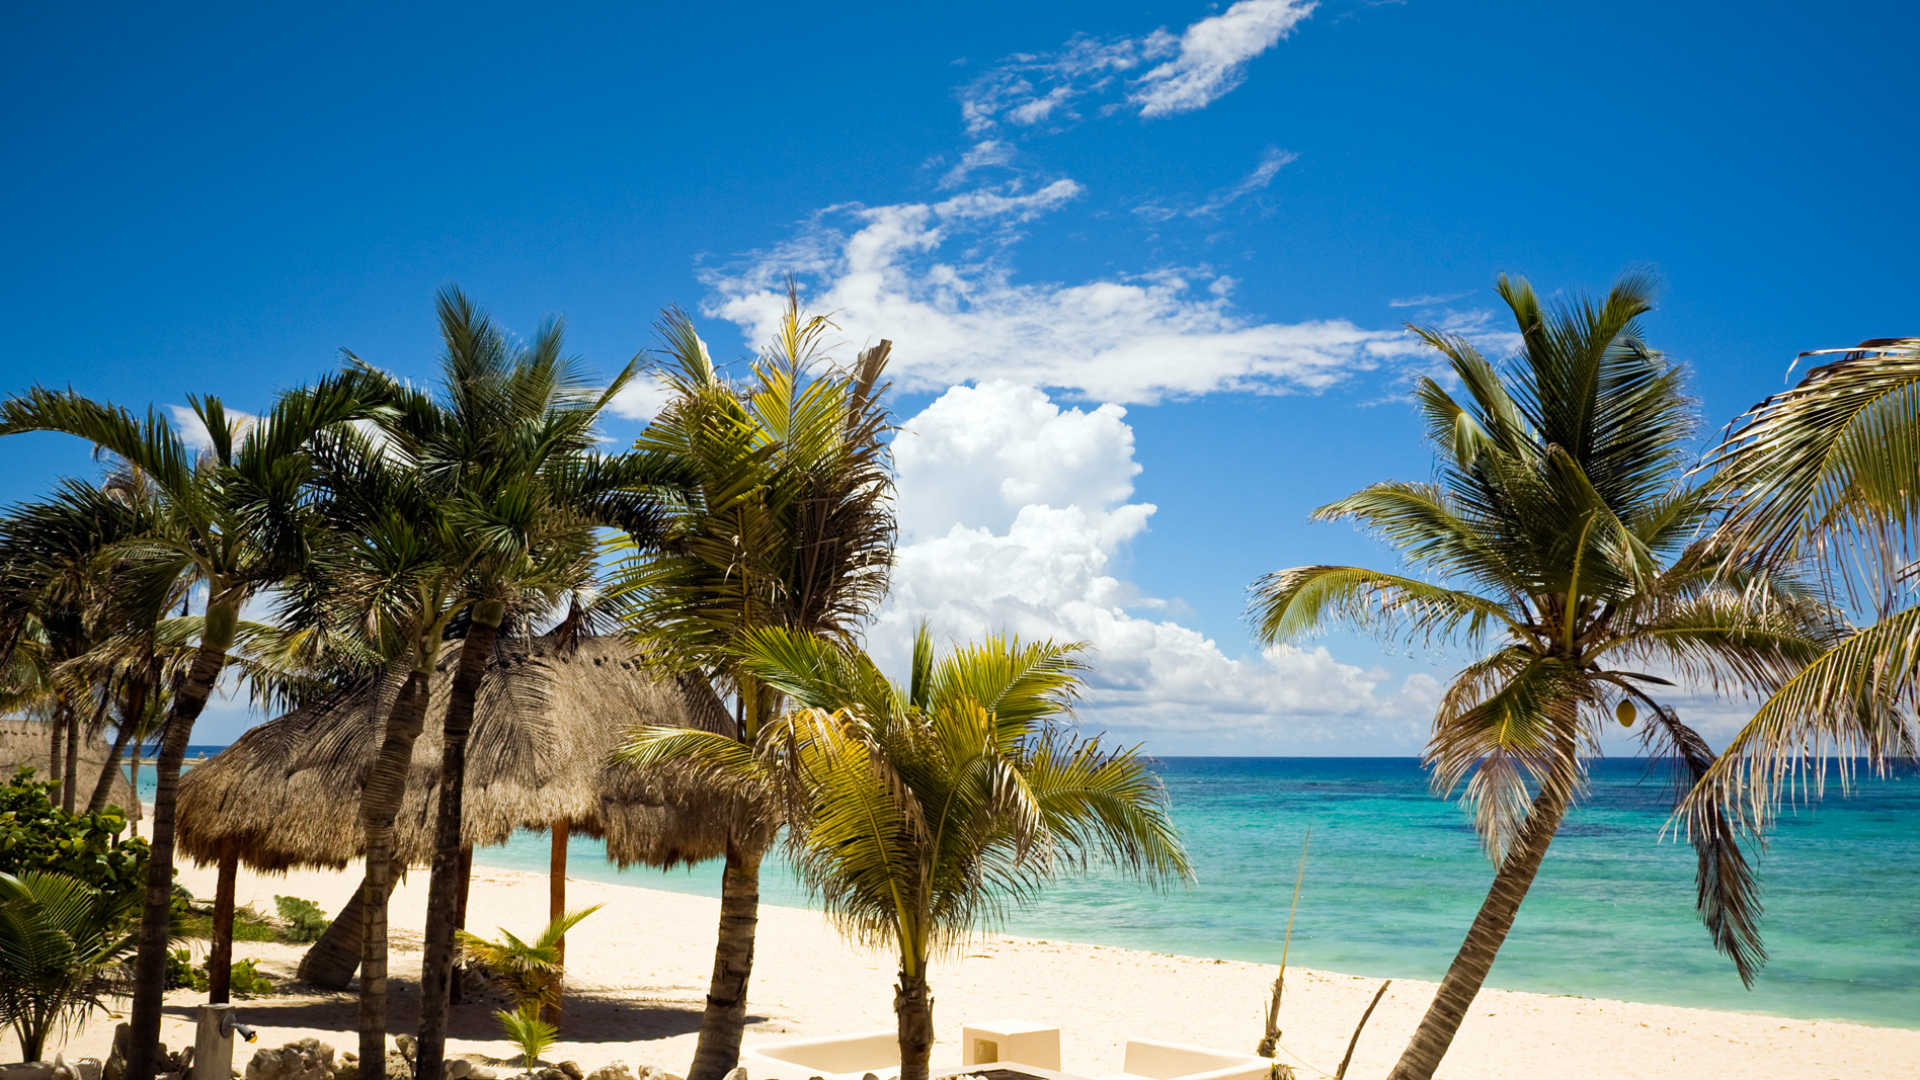 Free download Mayan Riviera Playa Del Carmen Holidays Holidays to